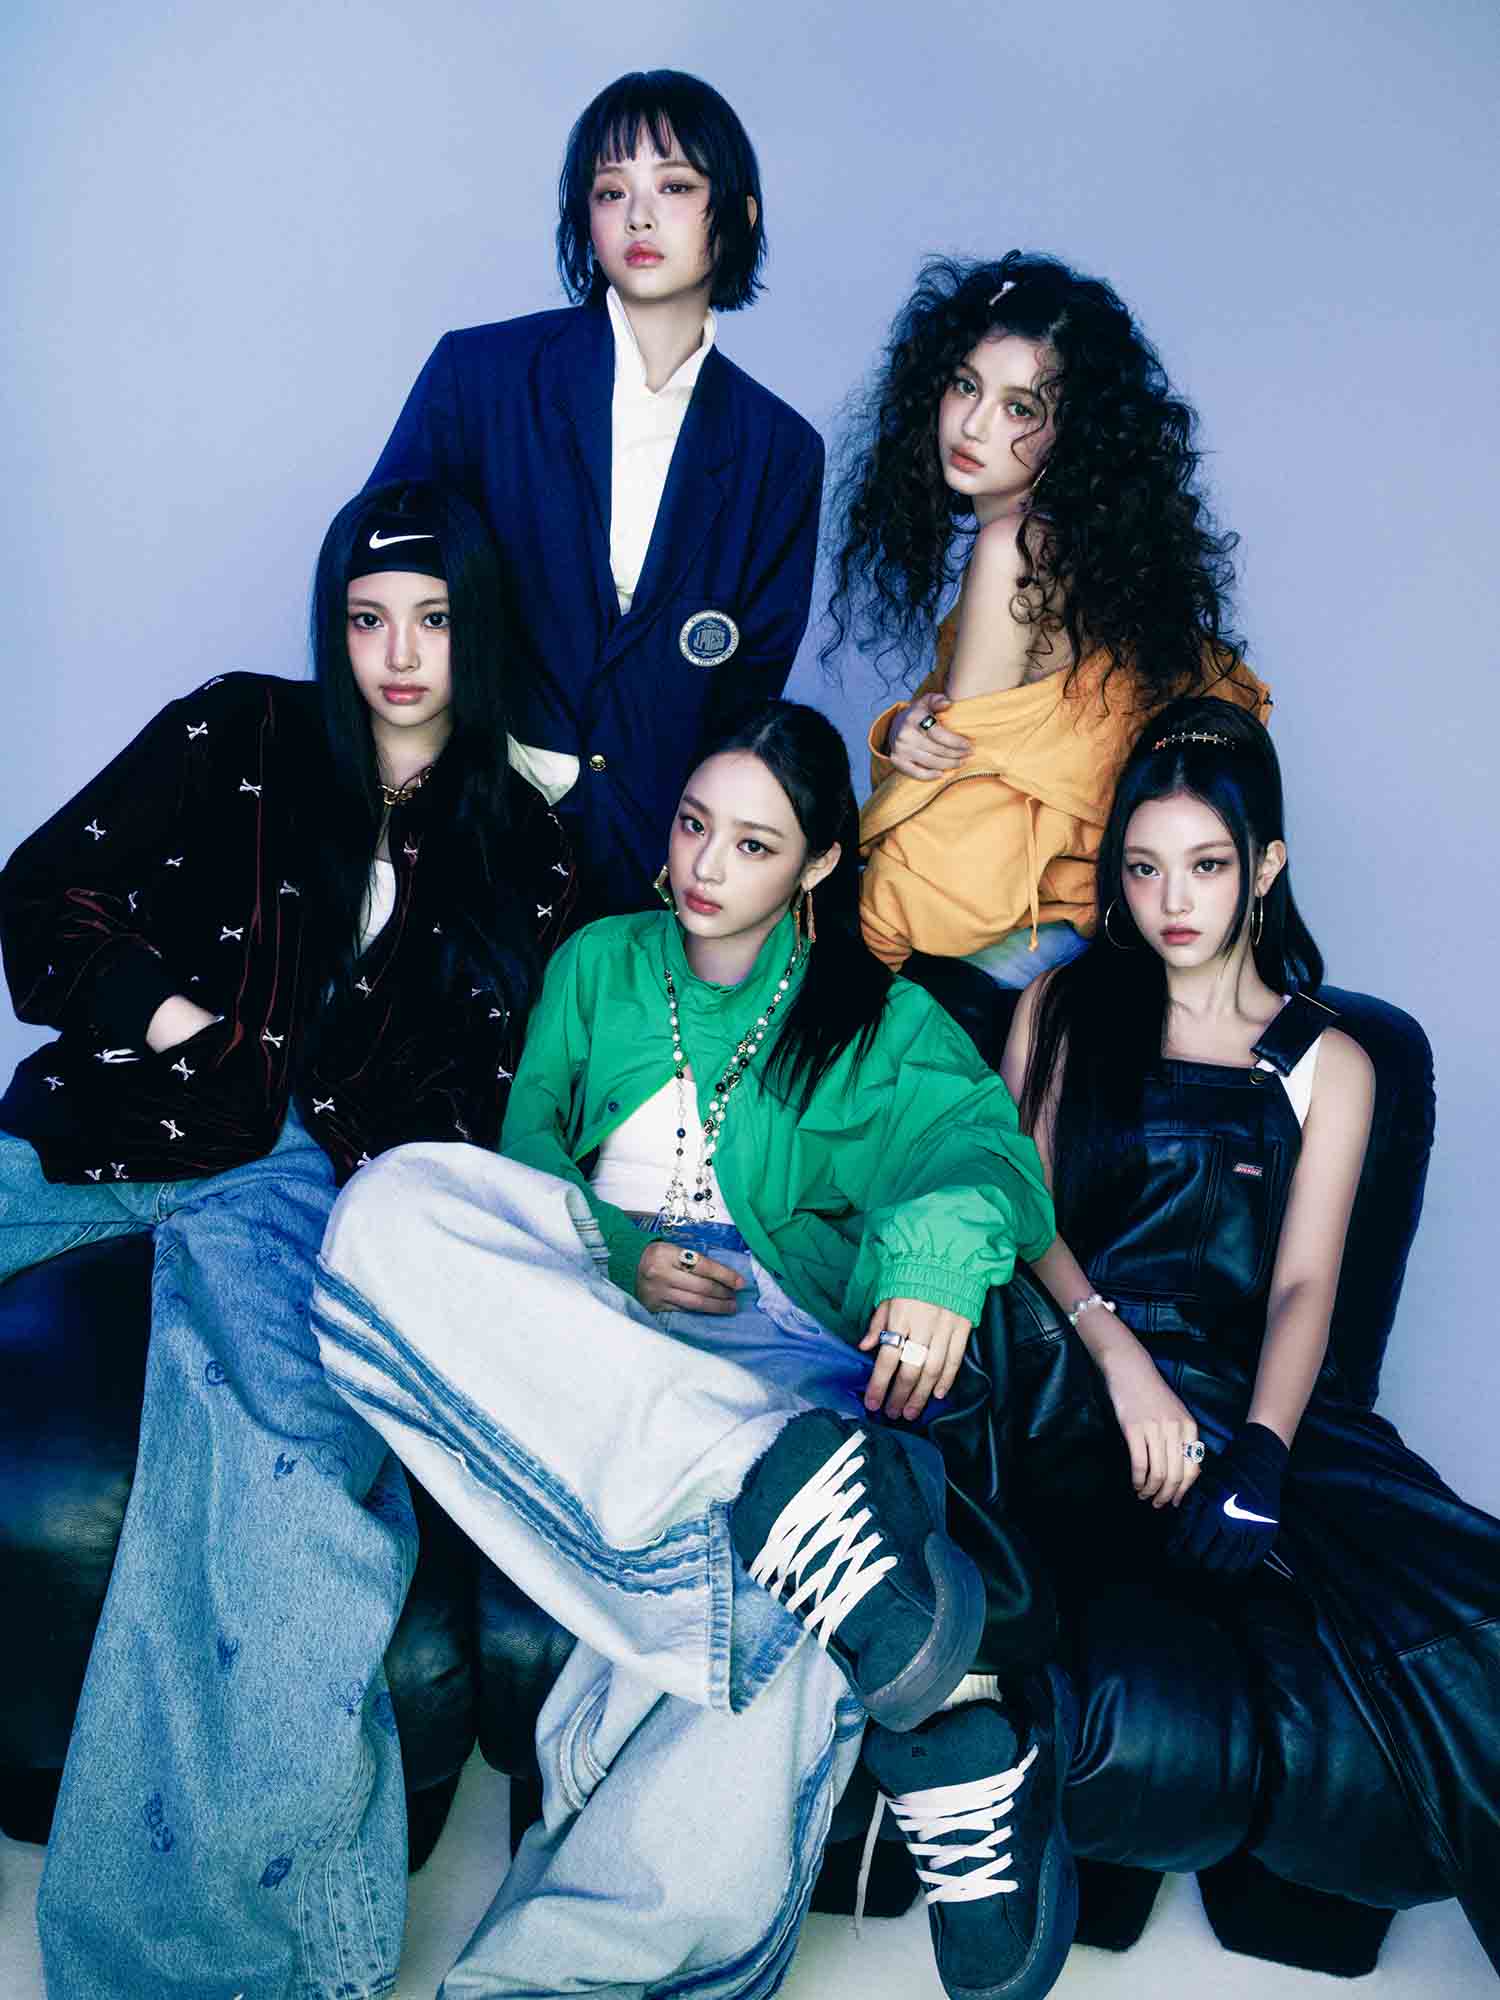 NewJeans được ra mắt vào tháng 8 năm 2022 gồm 5 thành viên: Hanni, Min Ji, Danielle, Hae Rin và Hye In. Khi ra mắt NewJeans được biết tới với tên gọi “em gái BTS“. Ảnh: Instagram nhân vật. 